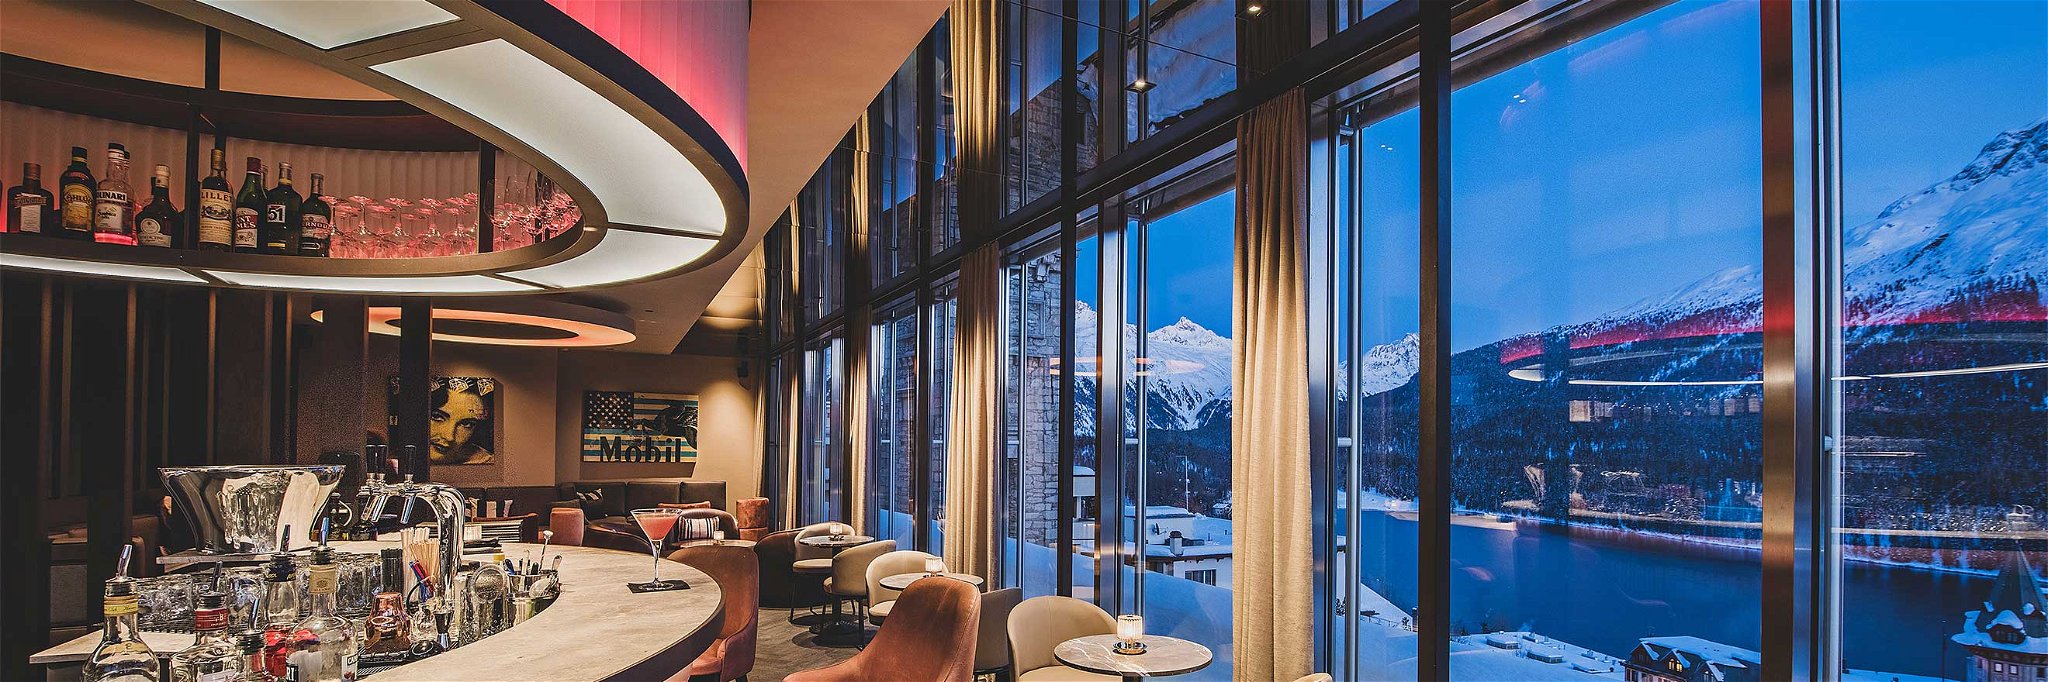 Die «The St. Moritz Sky Bar» ist die bislang einzige Rooftop-Bar des Skiorts.